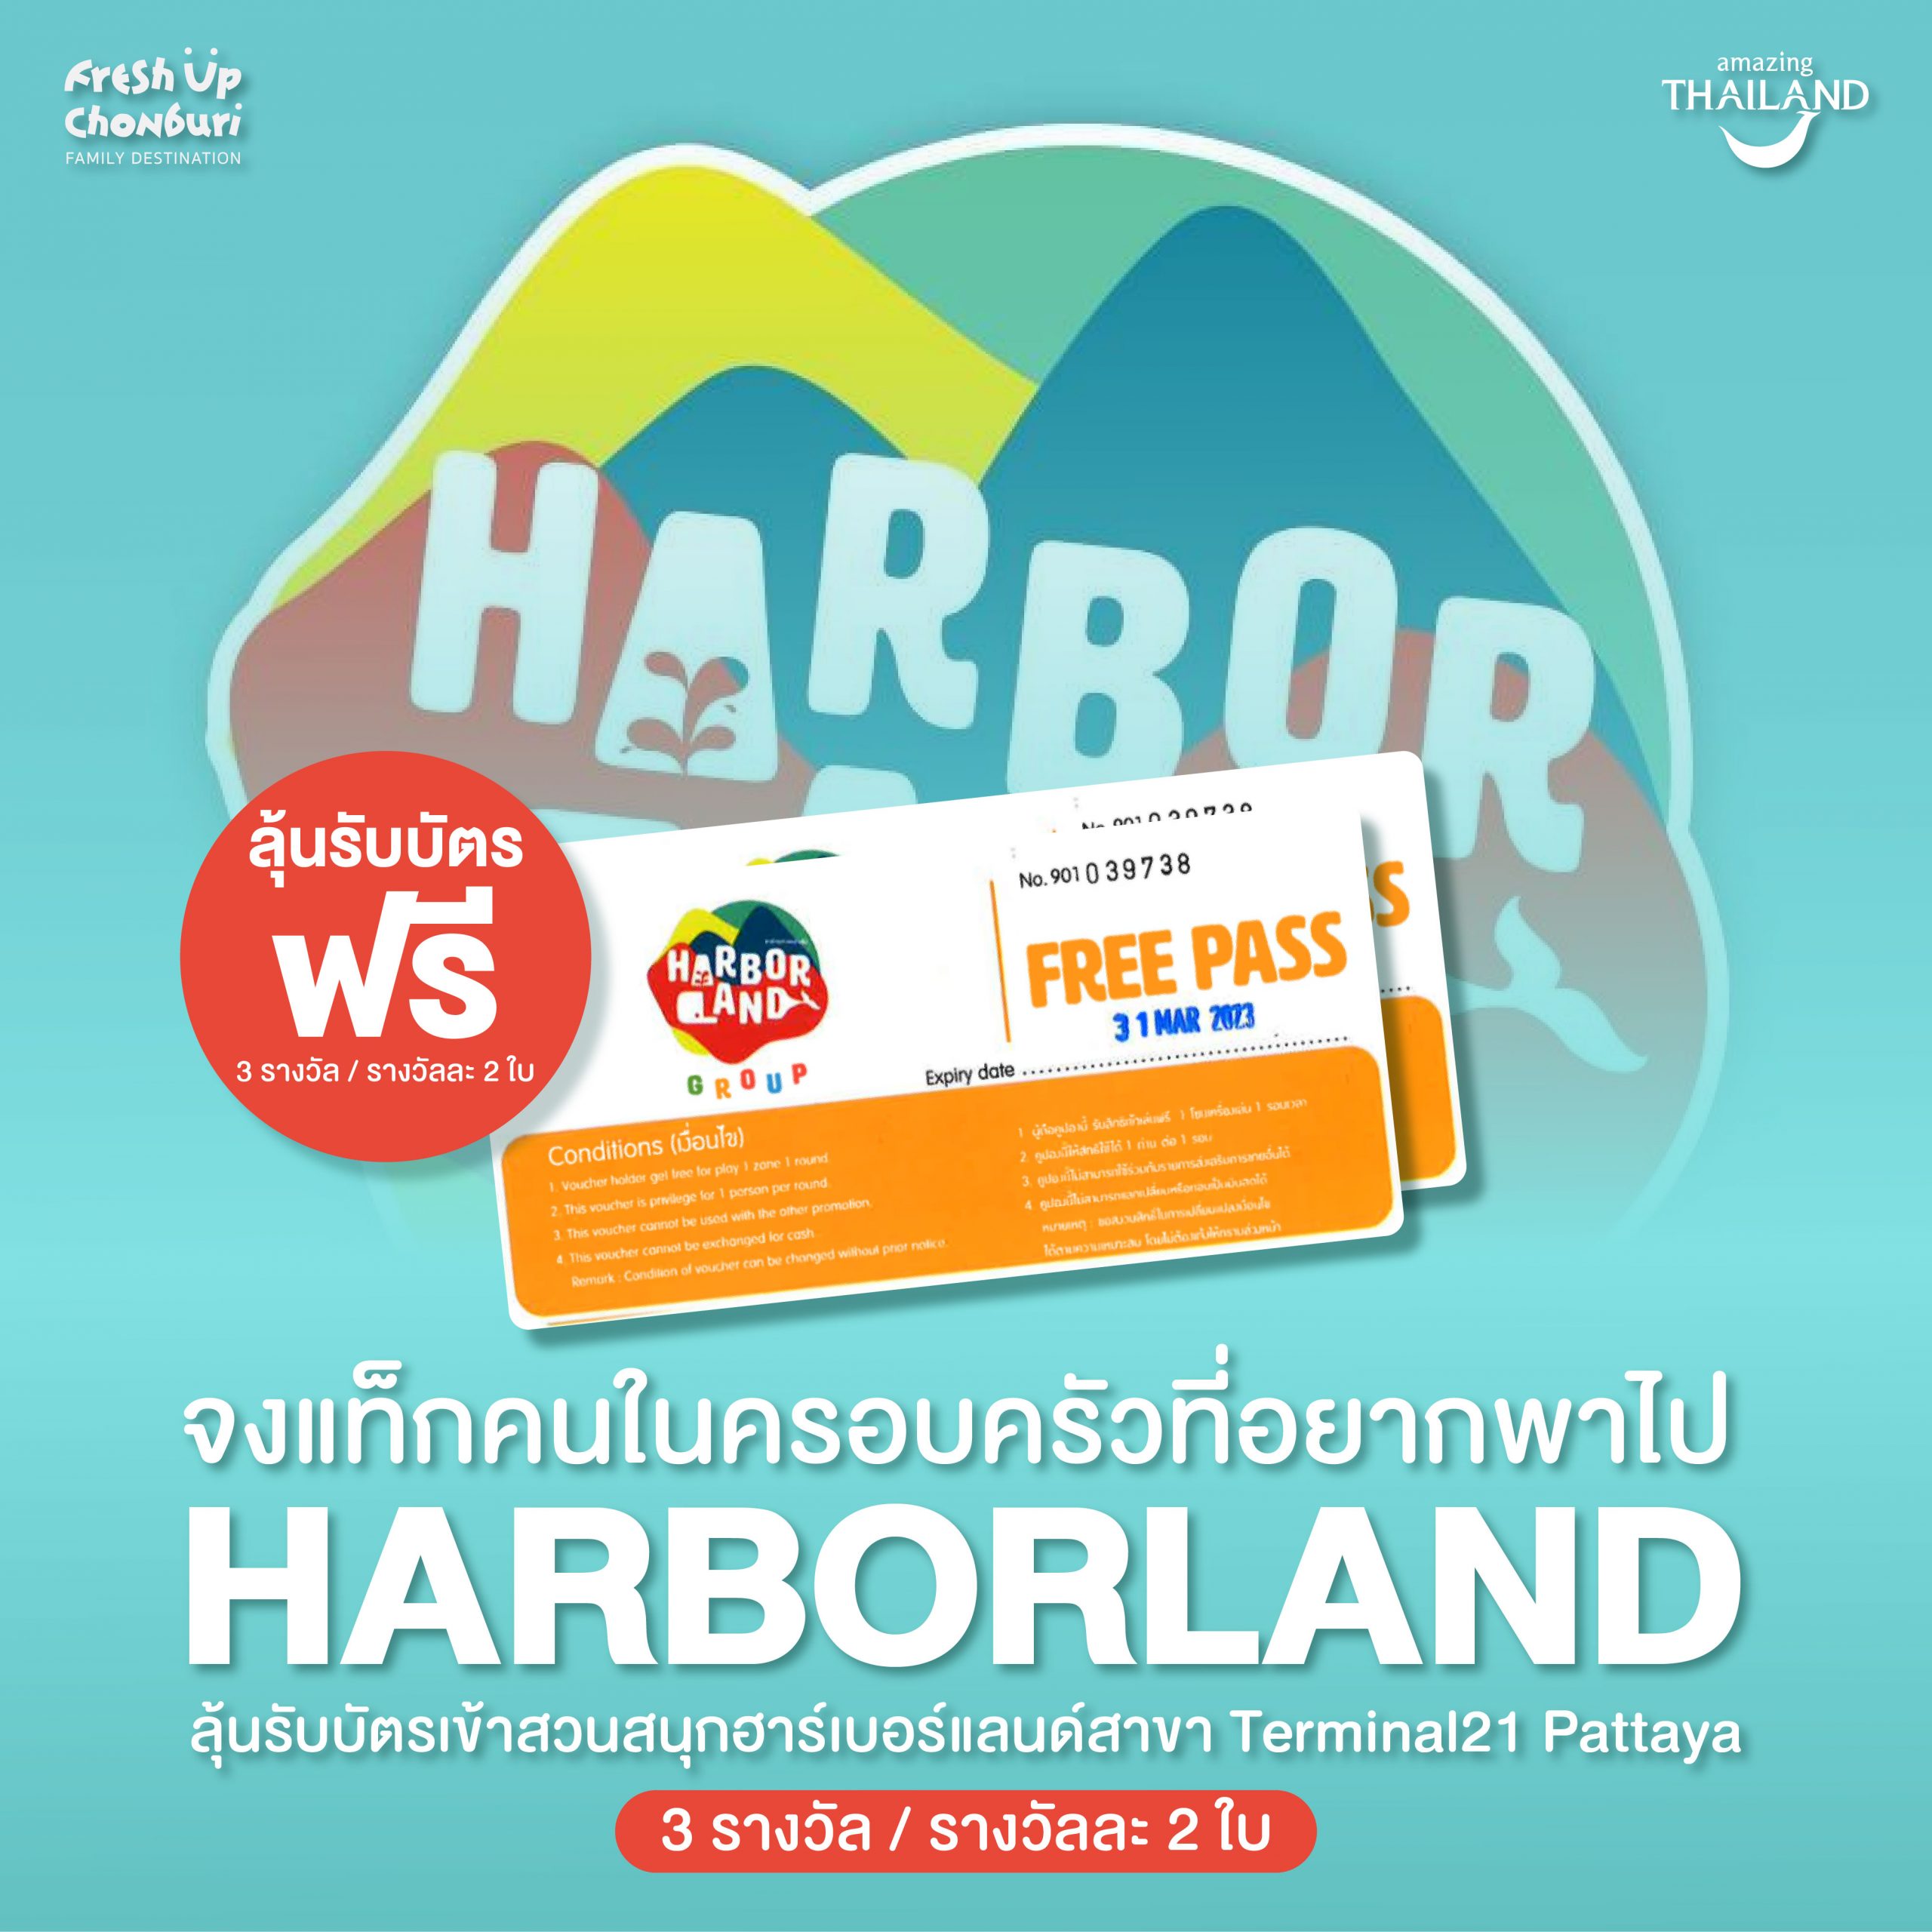 ลุ้นรับบัตรเข้าชมสวนสนุก ‘HarborLand’!